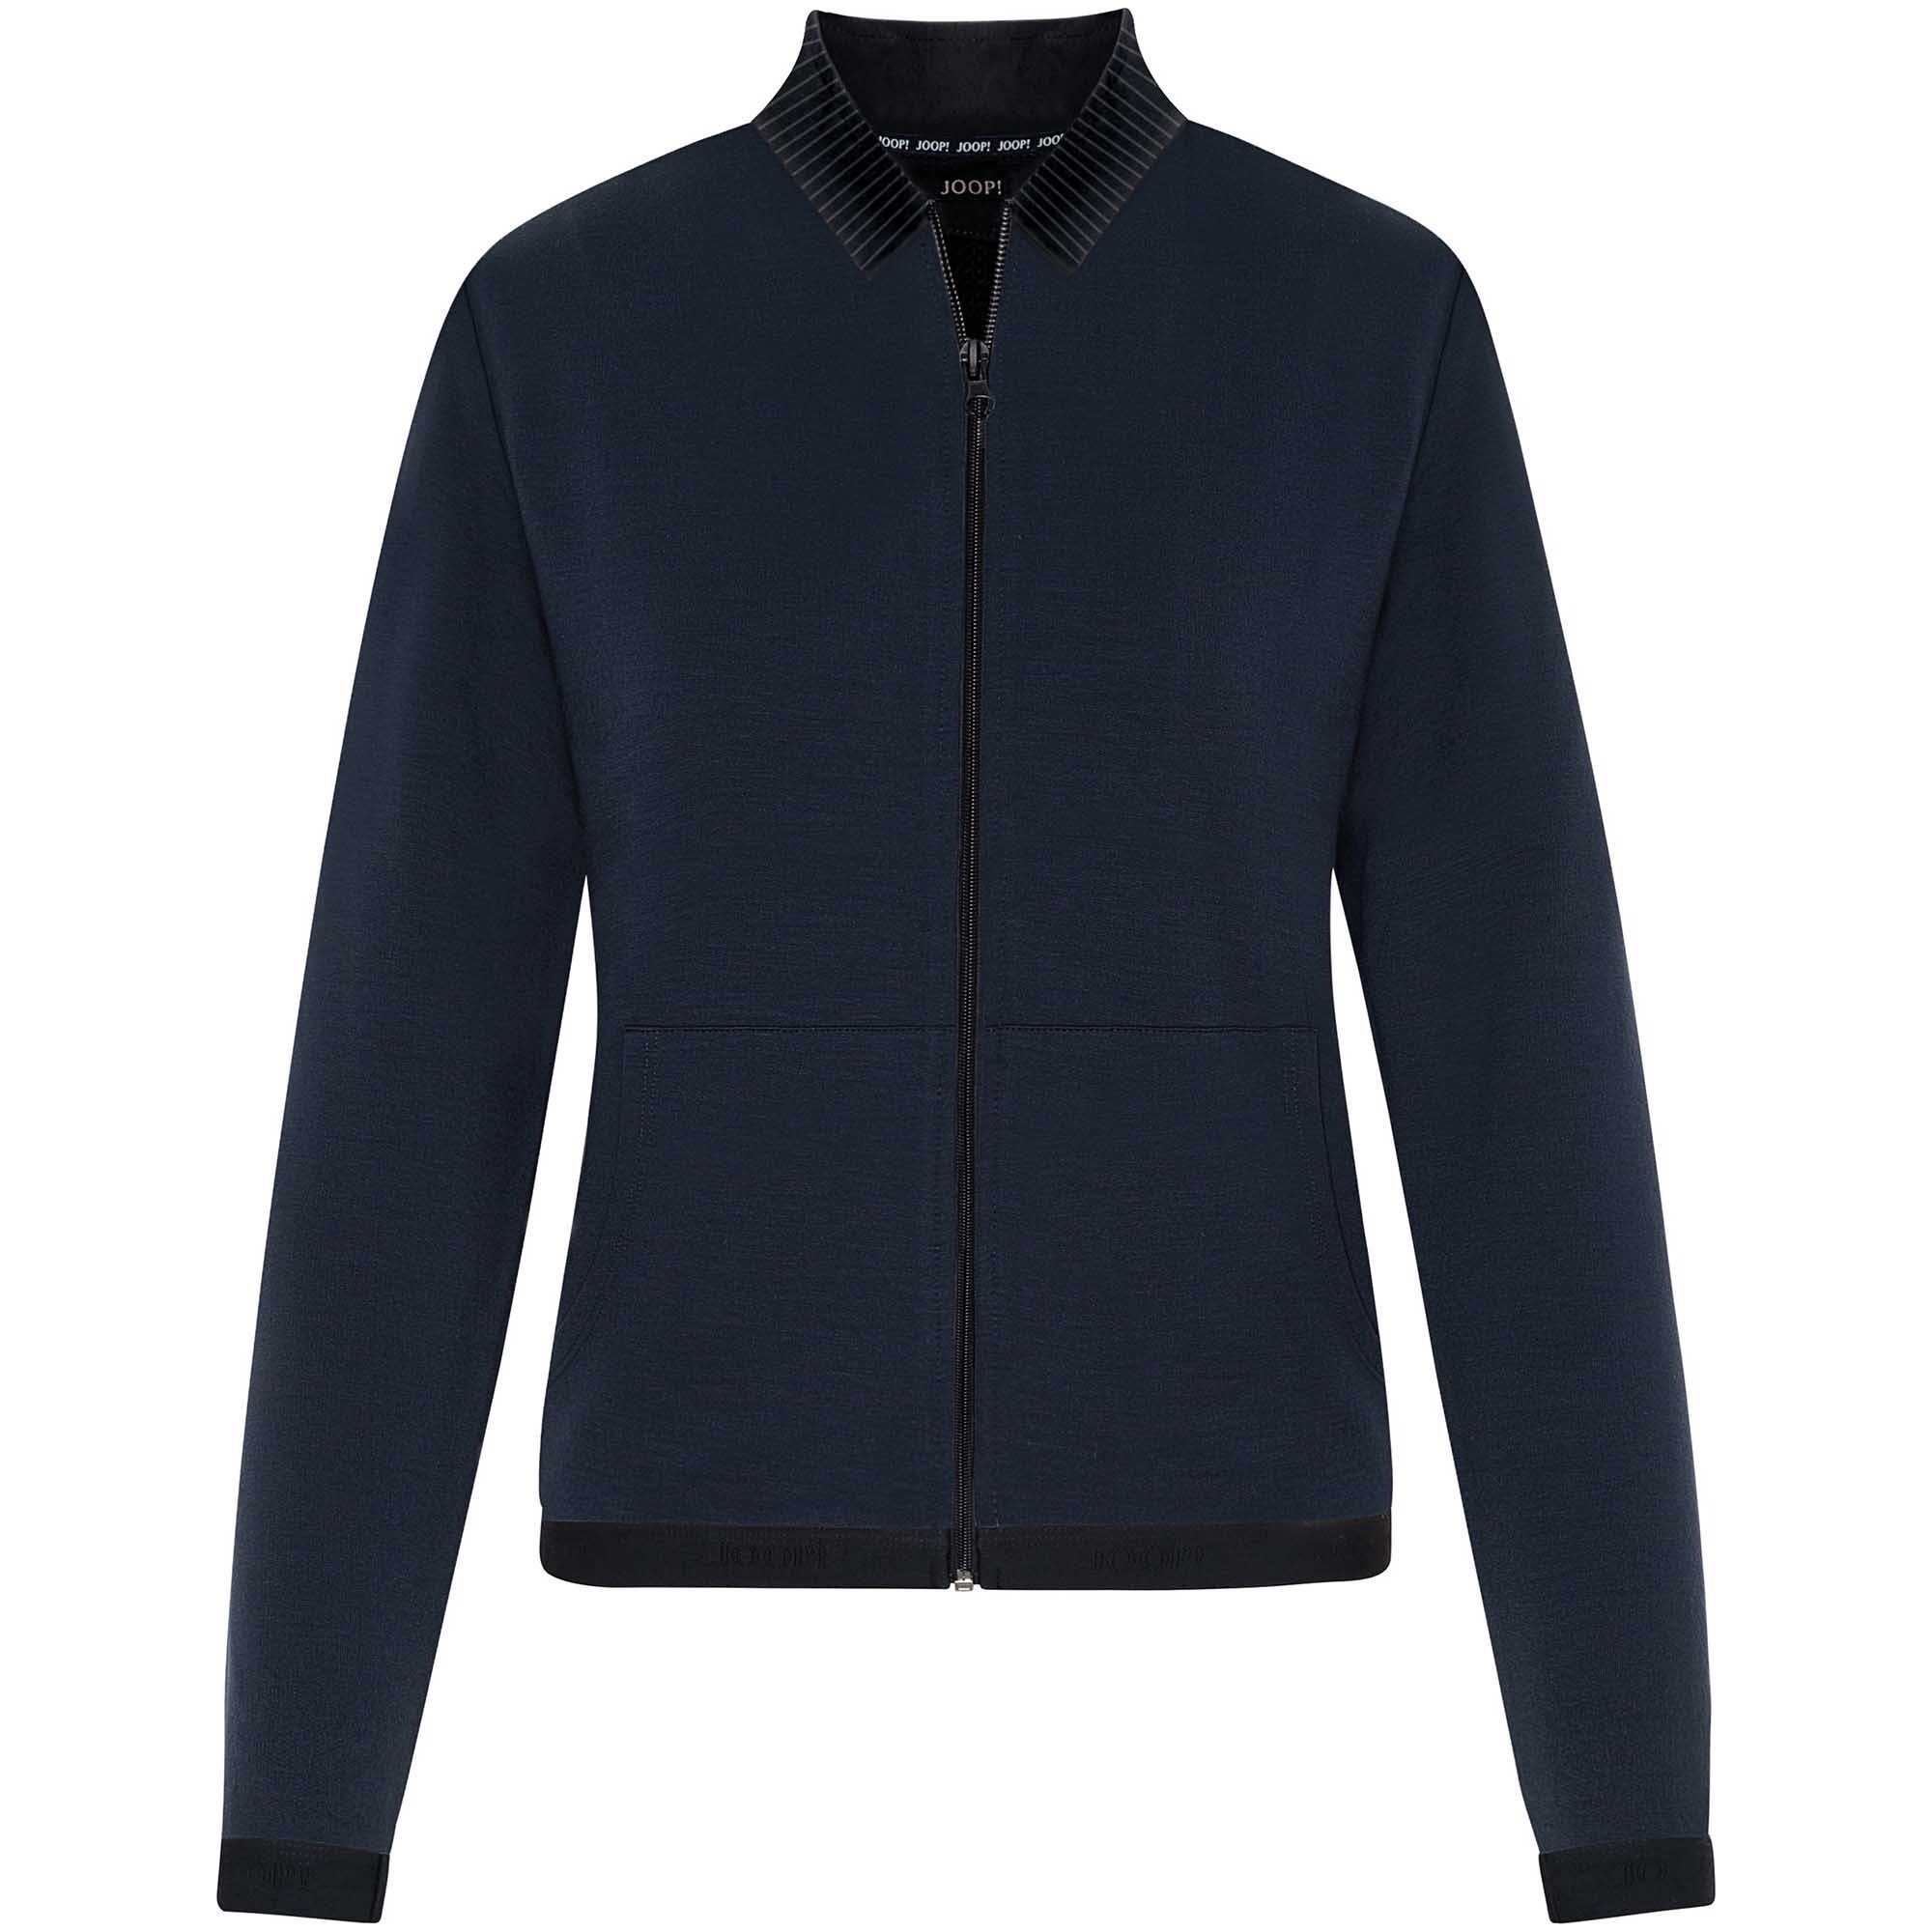 Joop! Sweater Damen Jerseyjacke - Loungewear Jacket, Zipper Blau